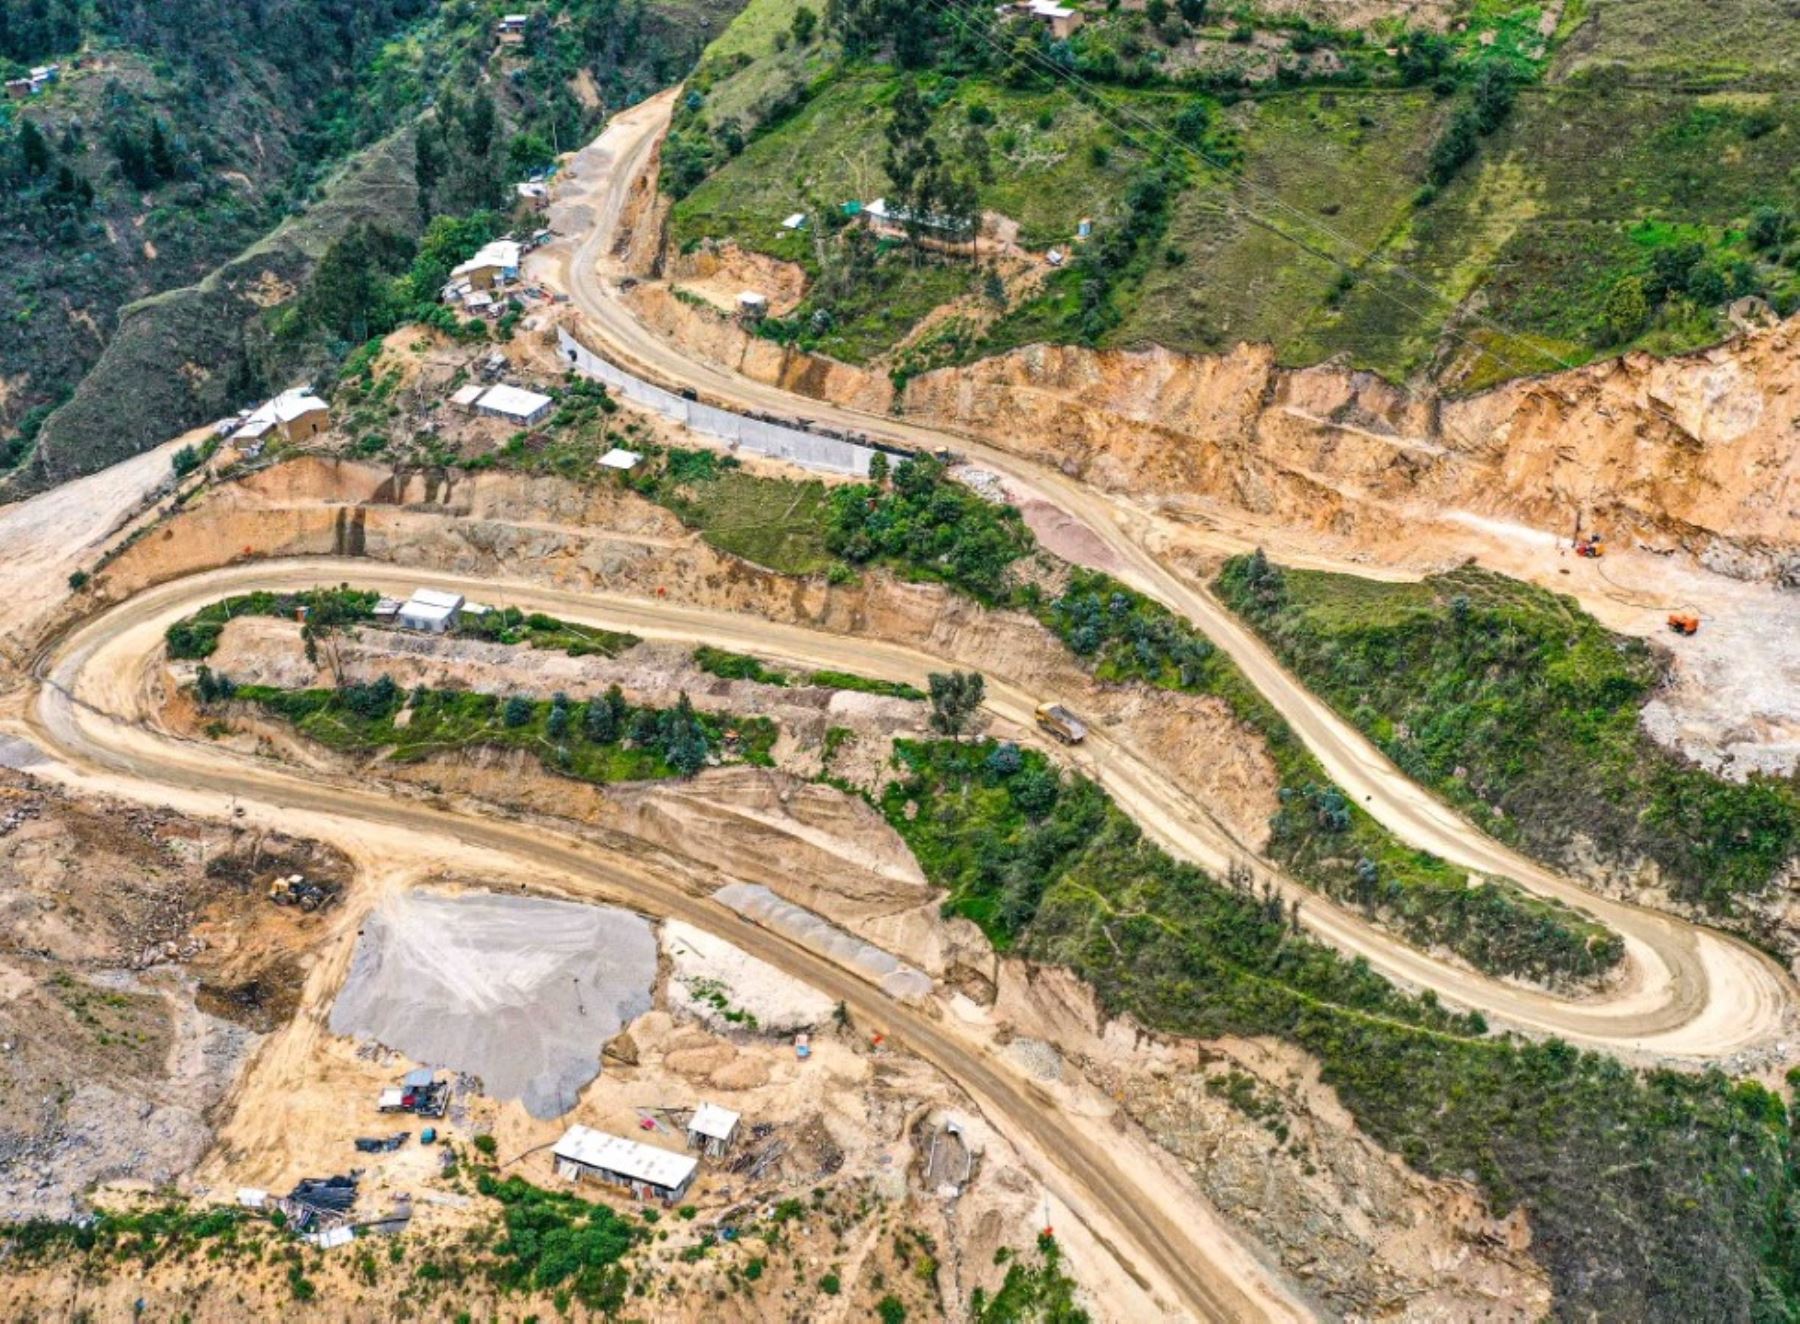 Provías Nacional inició la construcción del túnel Huactahuaru que unirá a las regiones Áncash y Huánuco.